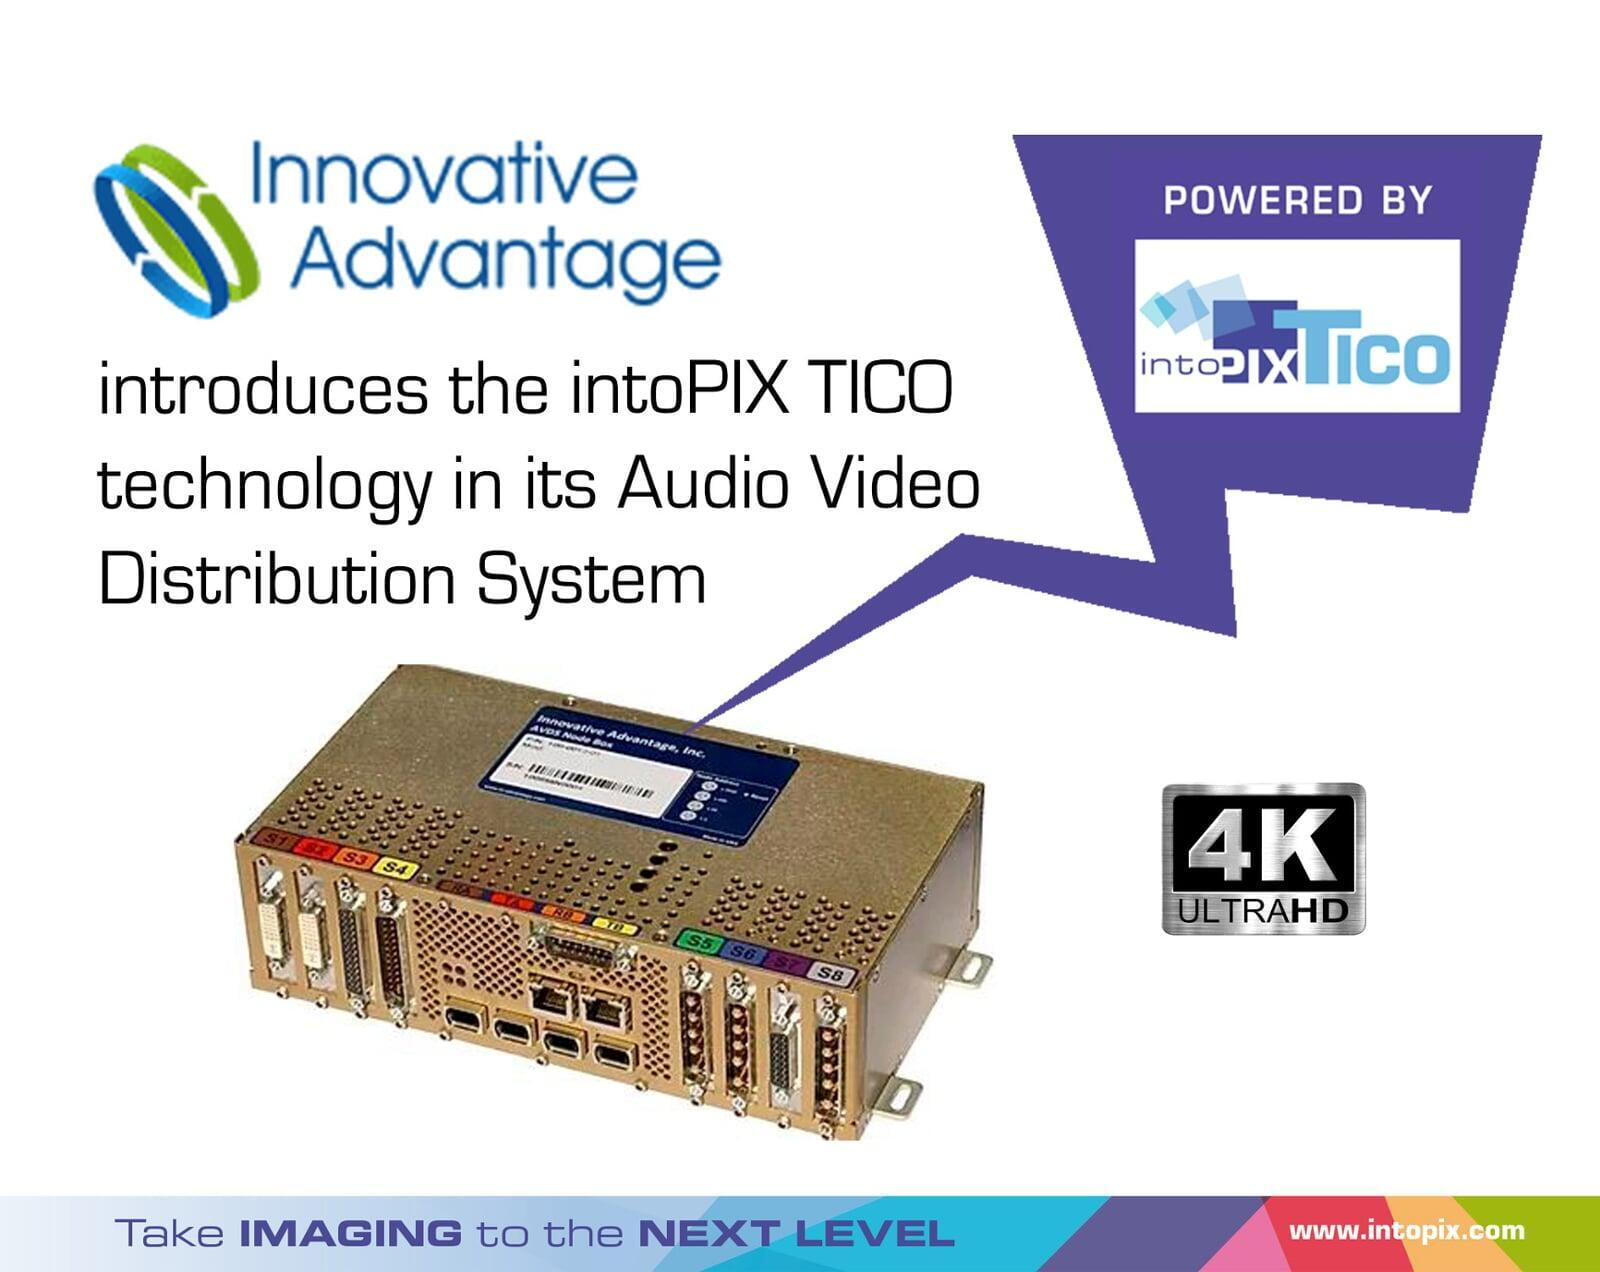 Innovative Advantage는 intoPIX TICO RDD35 기술을 사용하여 비즈니스 제트기에서 HD to 4K로 스트림을 업그레이드합니다. 